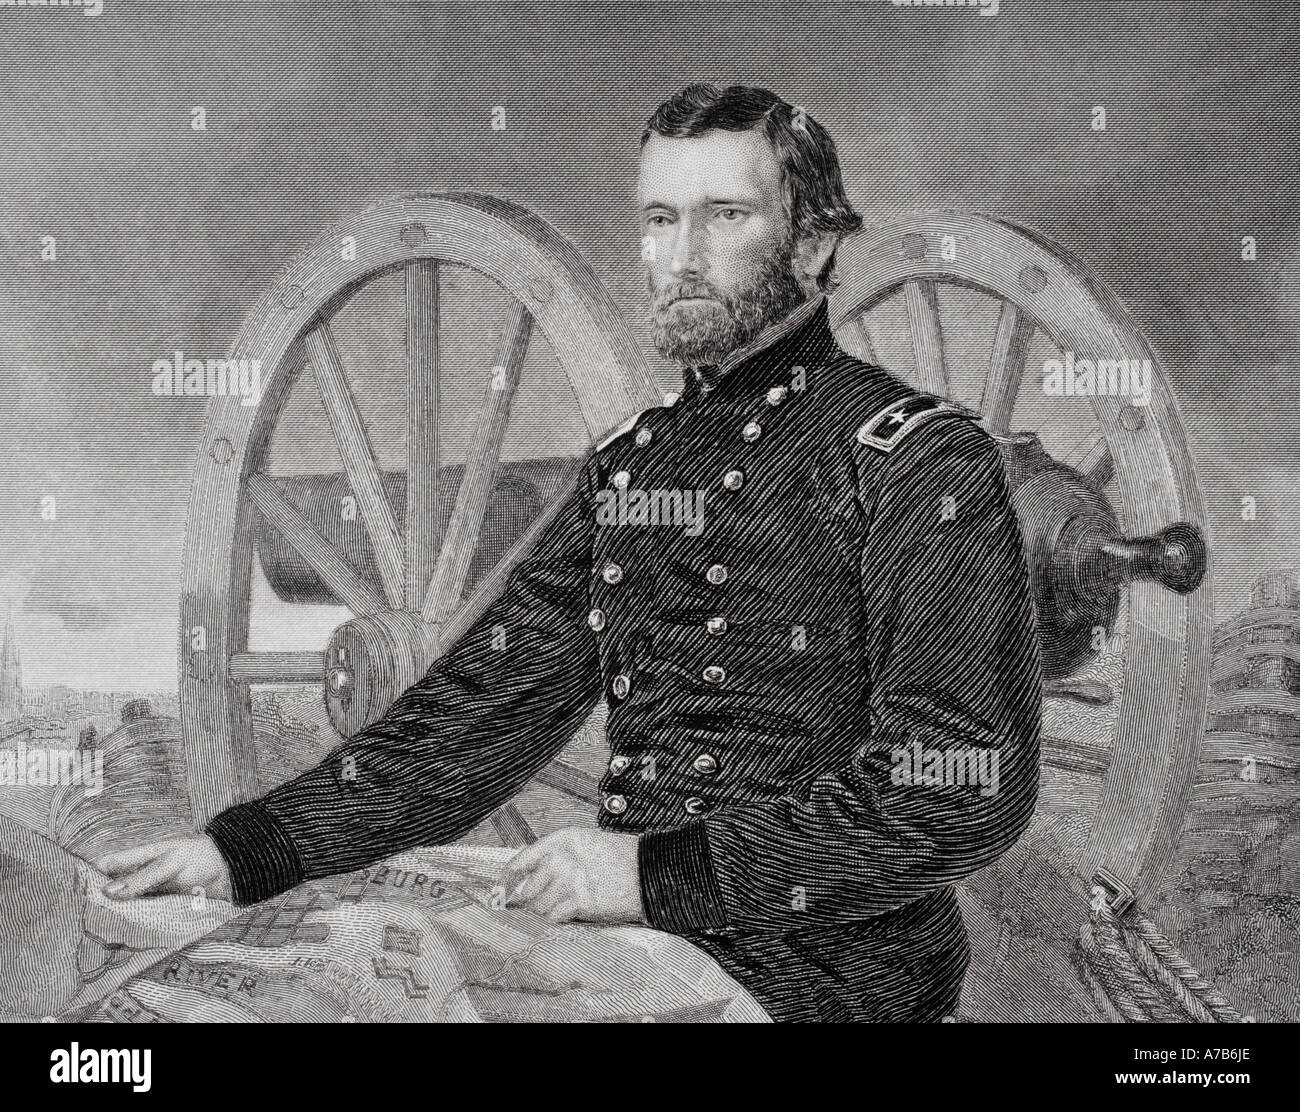 Ulysses S Grant, 1822 - 1885. Befehlshaber der Armeen der Union im Amerikanischen Bürgerkrieg und 18. Präsident der Vereinigten Staaten von Amerika. Stockfoto